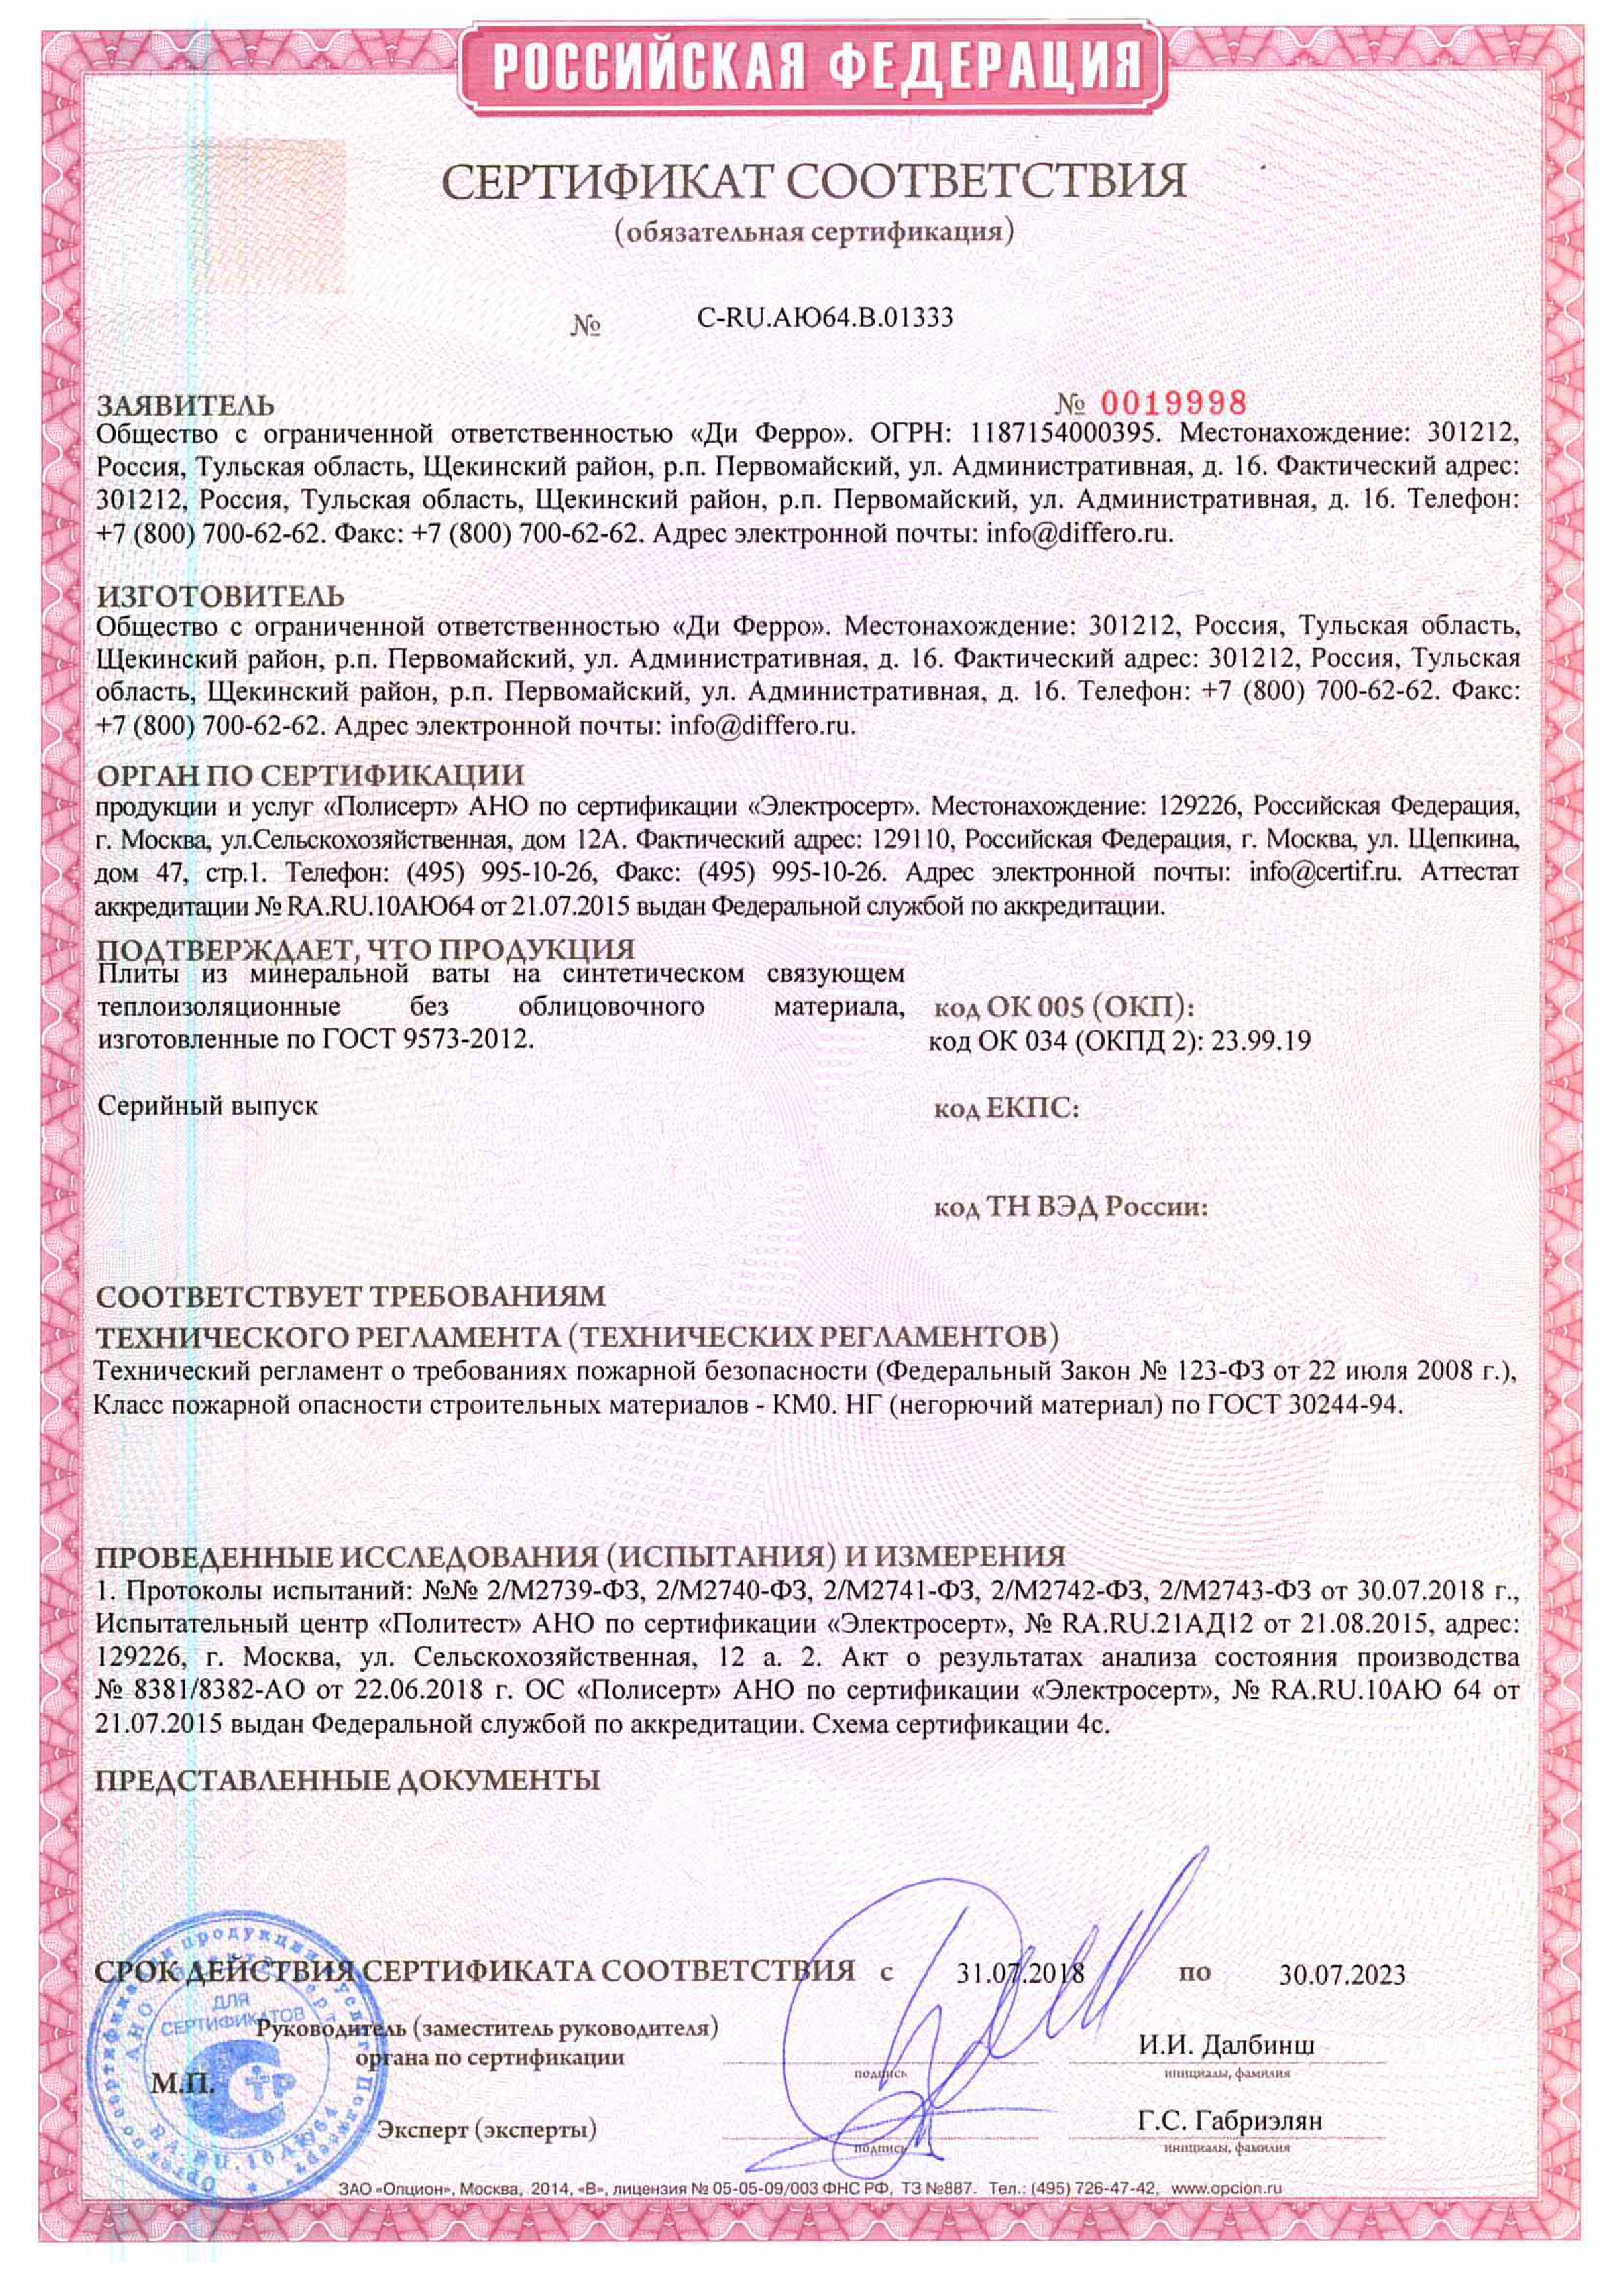 Сертификат соответствия пожарной безопасности Дирок 2